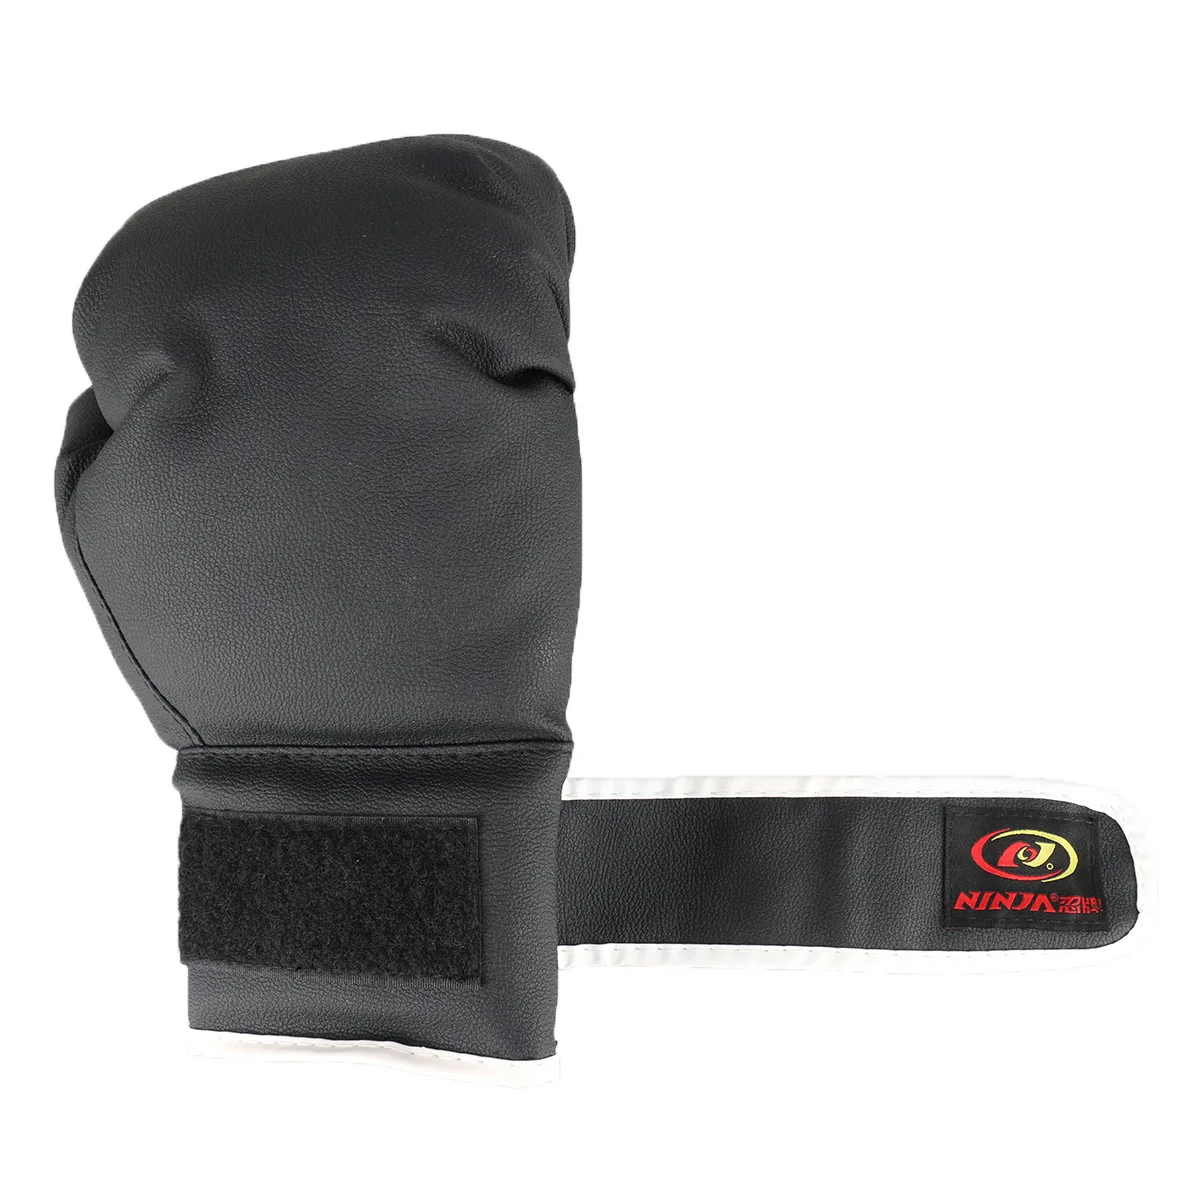 Mumiann7904 Детские модели боксерских перчаток только тренировочные